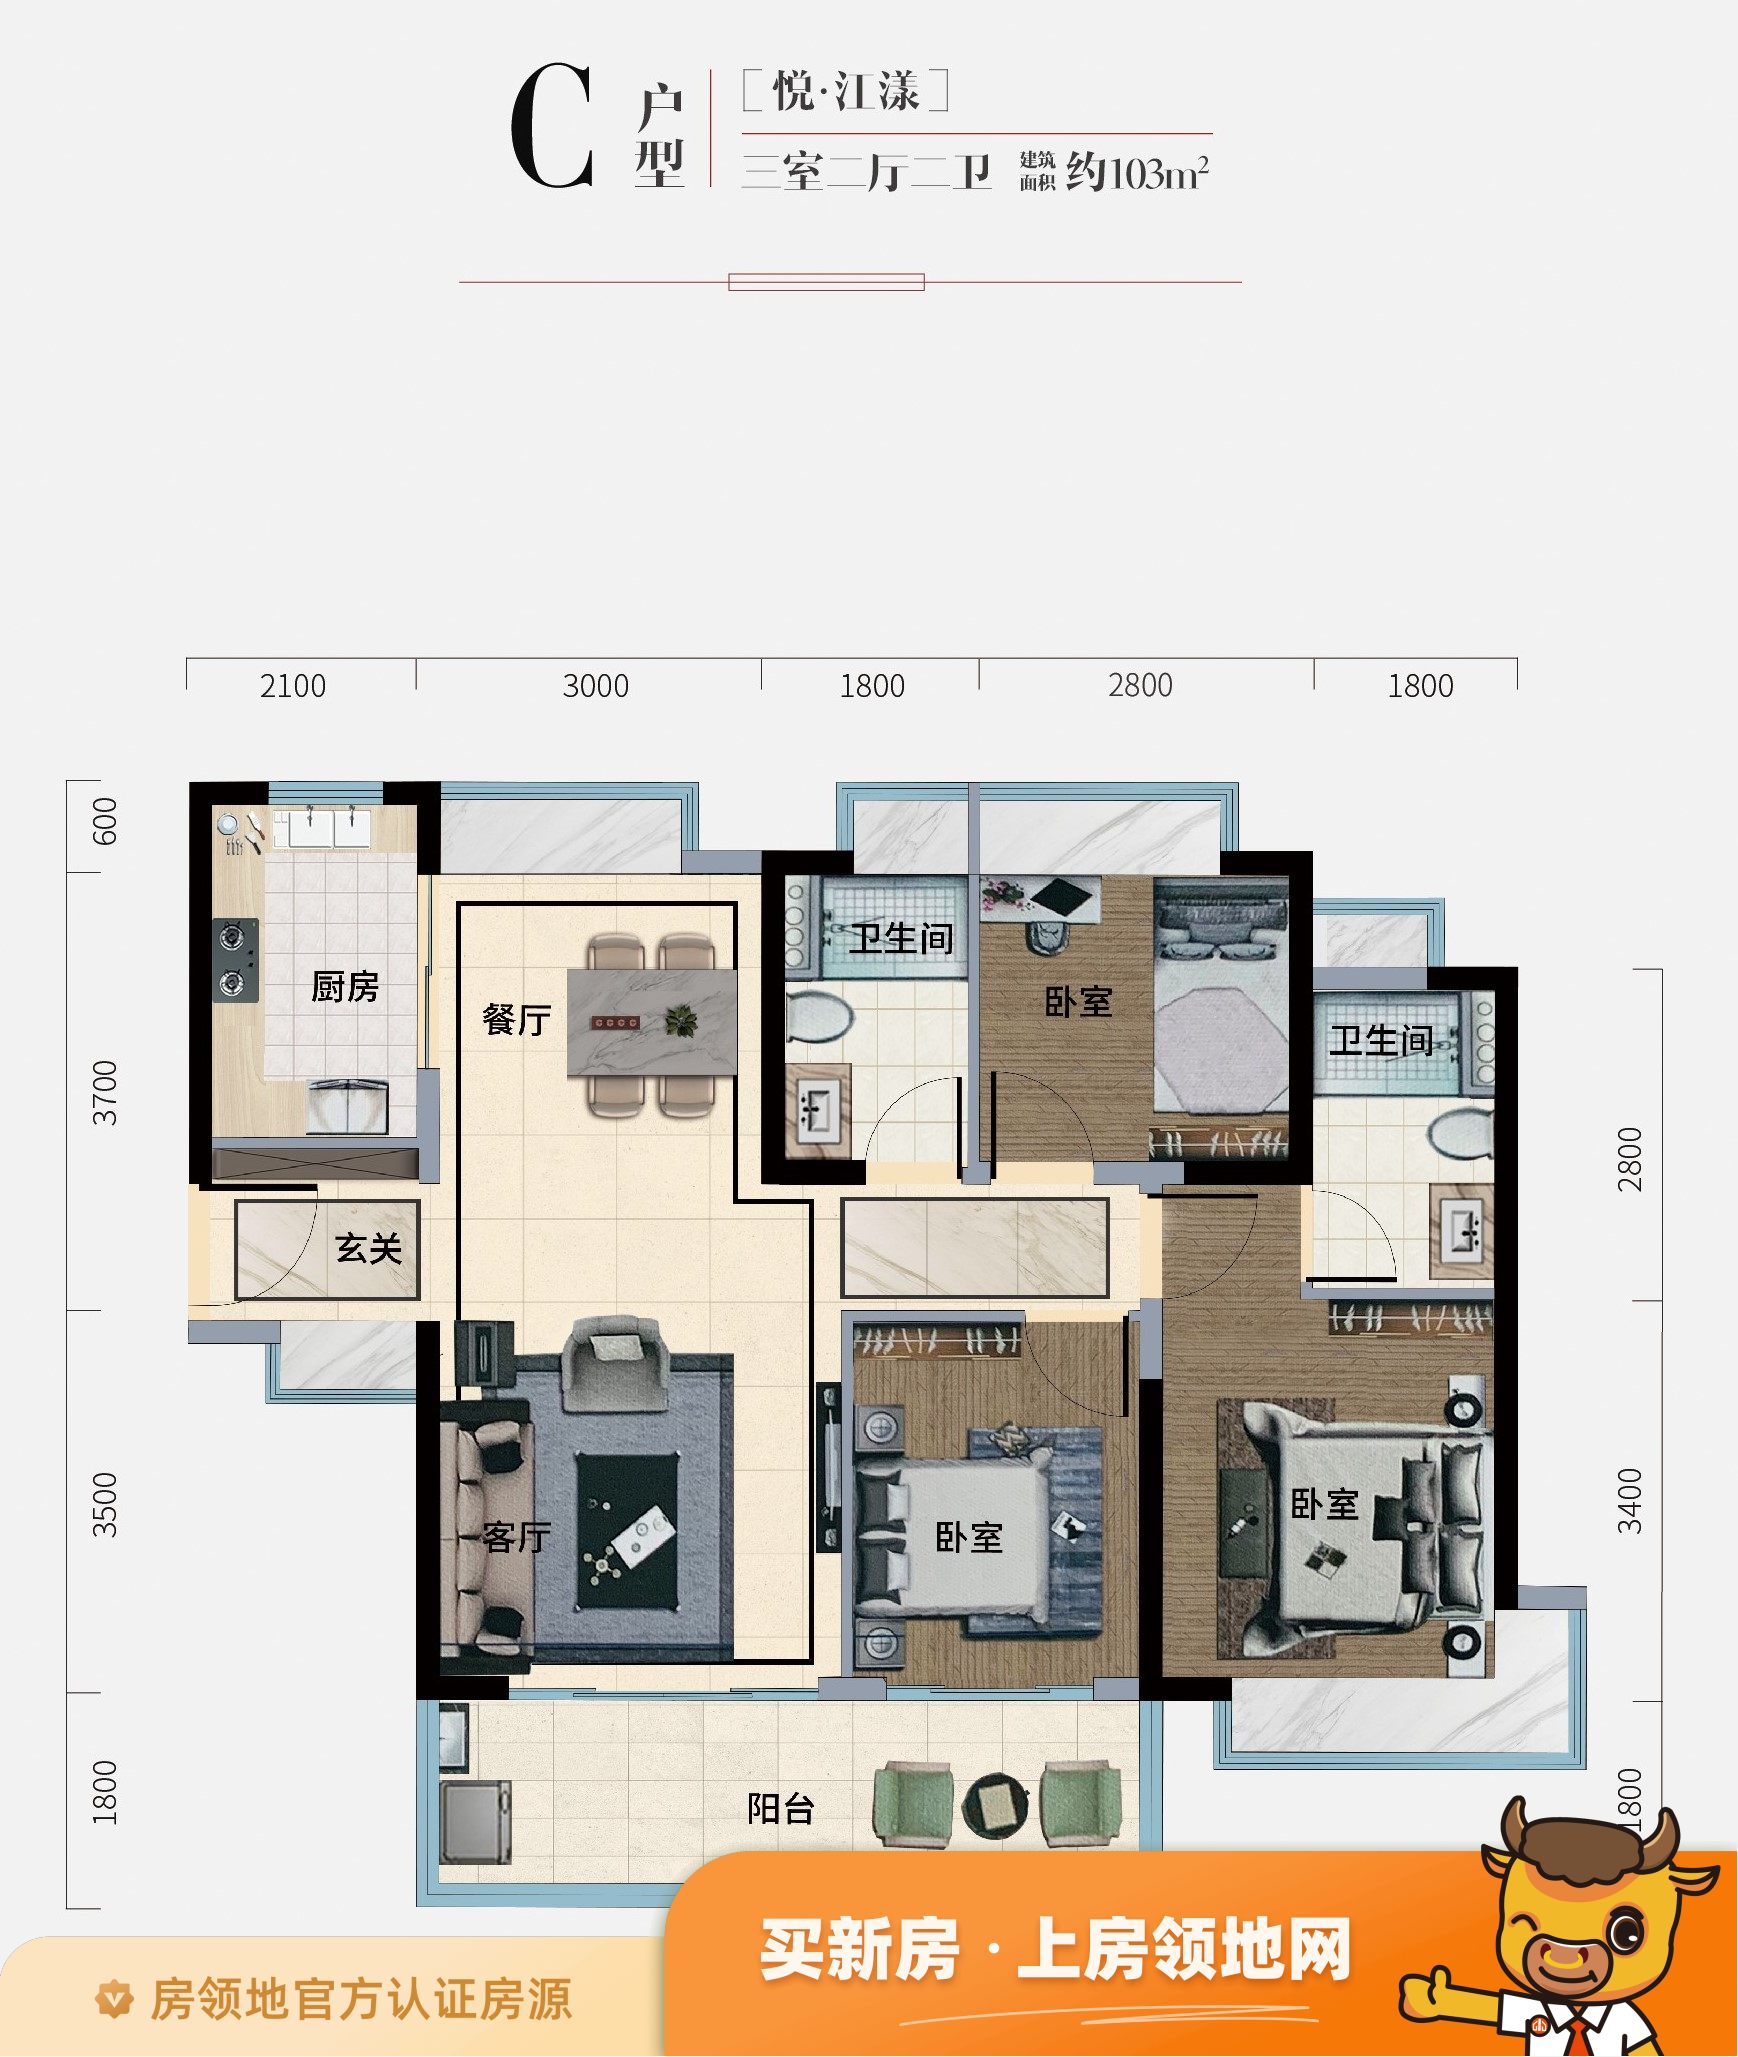 苏州凤凰文化广场公寓户型图3室2厅2卫